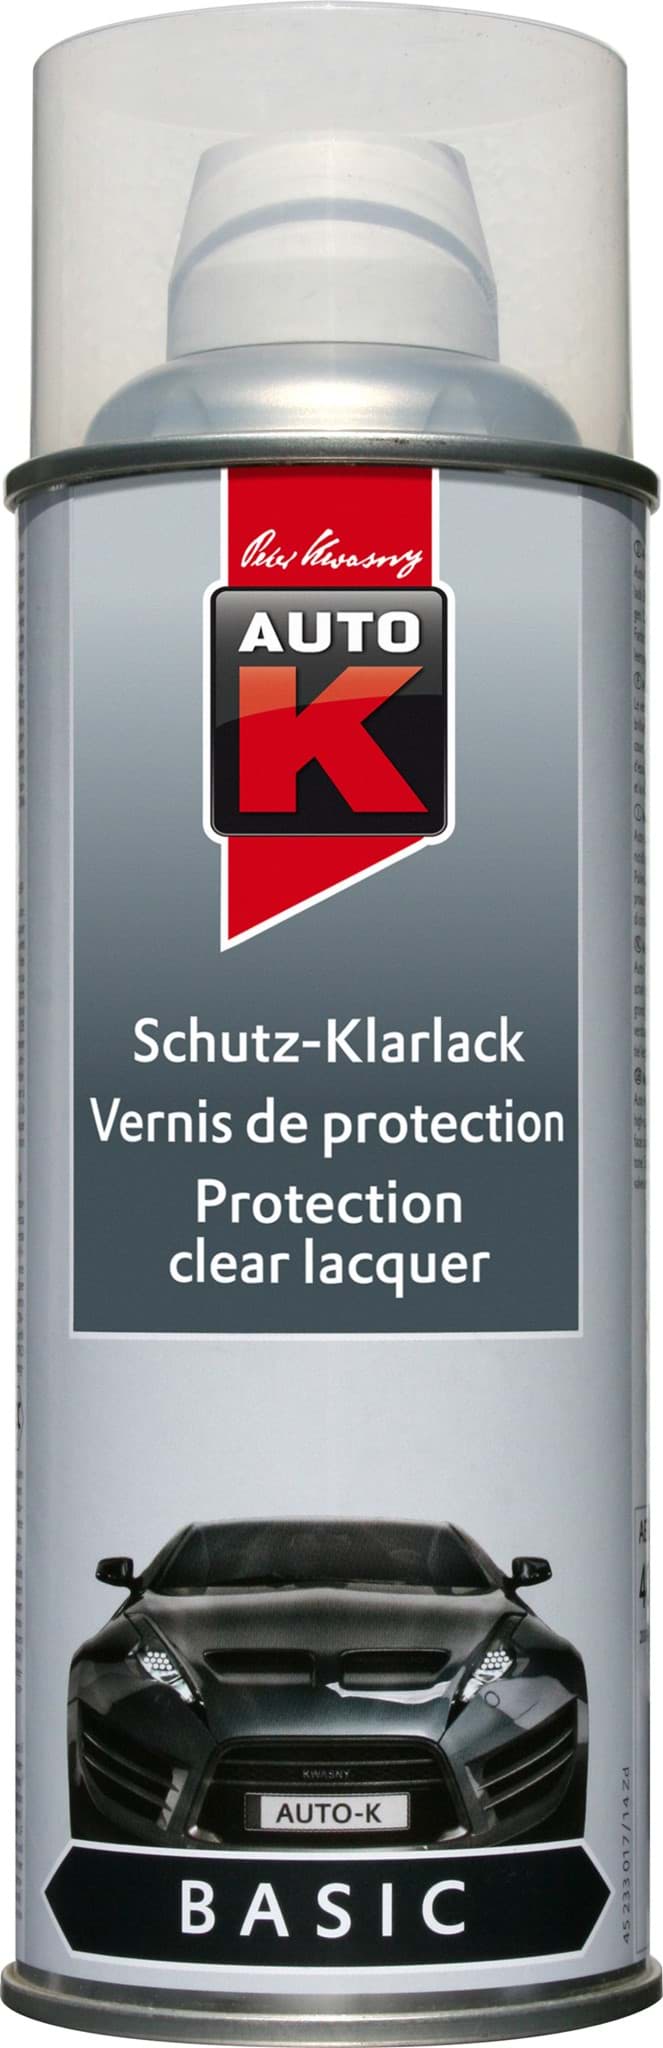 Auto-K Schutz-Klarlack 233017 Glanz & Versiegelung für Ihre Oberflächen